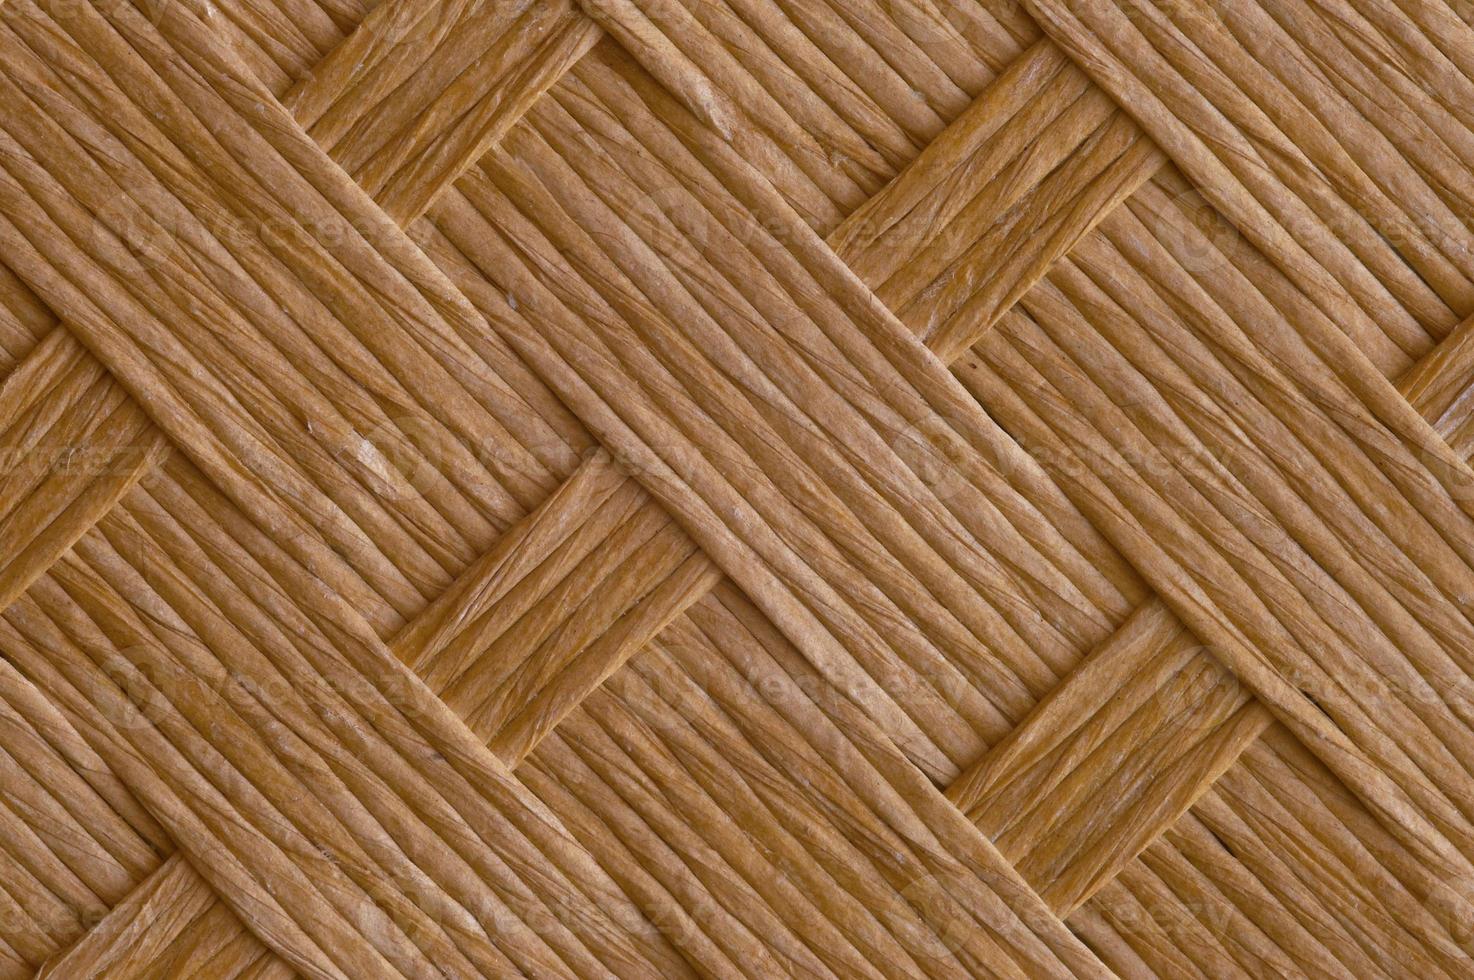 A woven texture photo